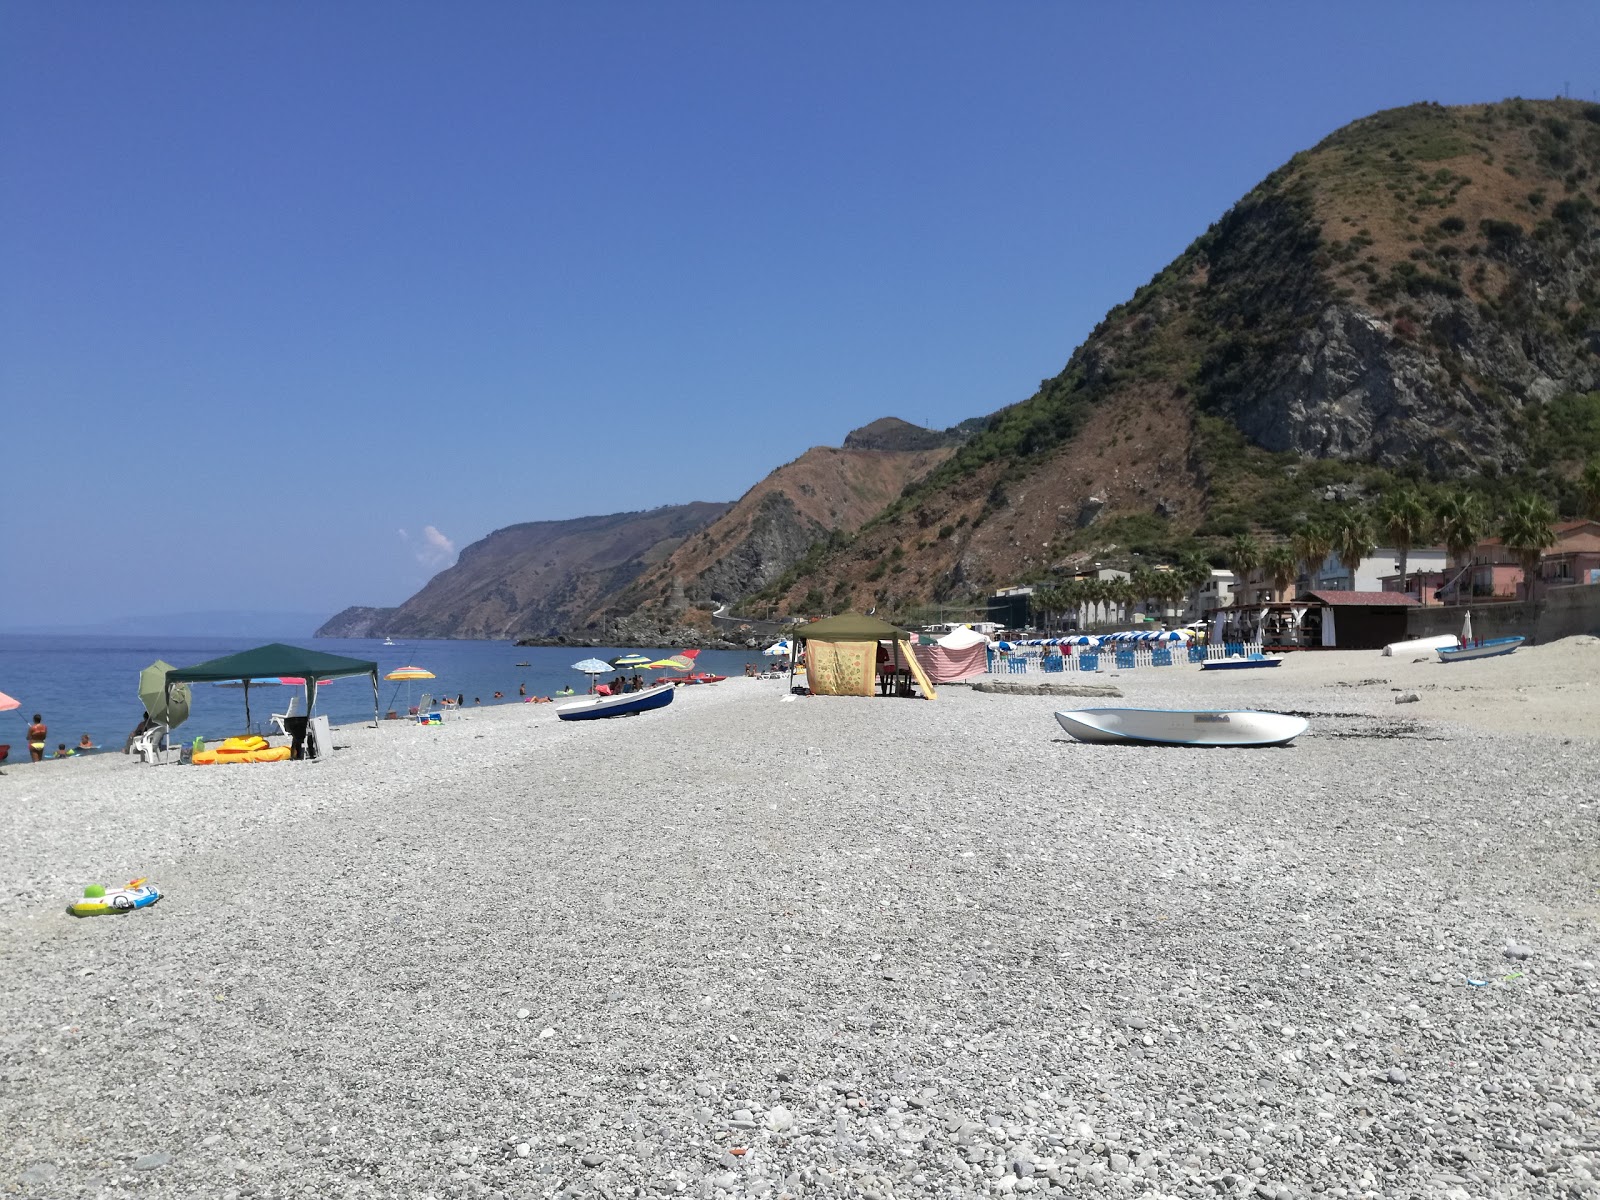 Fotografie cu Favazzina beach cu nivelul de curățenie înalt